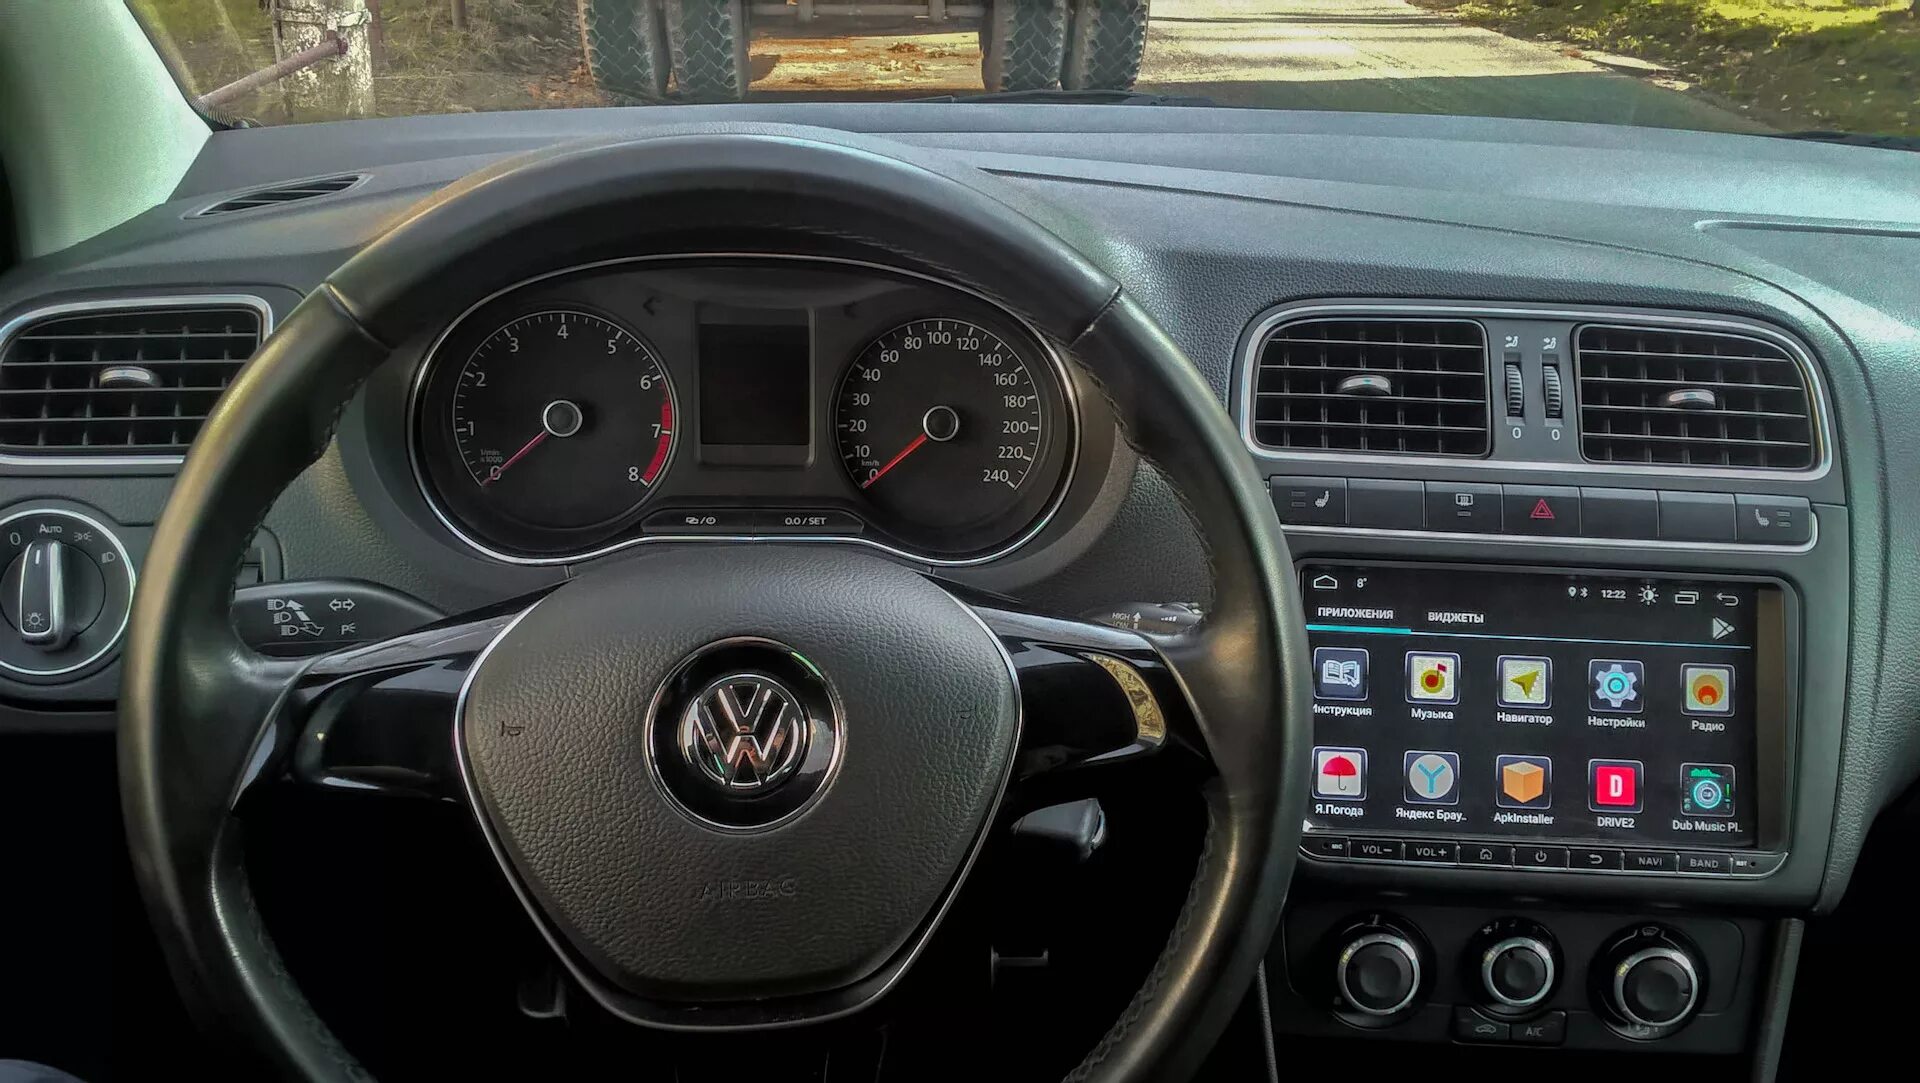 Vw polo управление. Volkswagen Polo 2013 приборная панель. Панель приборов Фольксваген поло 2018. Панель приборов Volkswagen Polo 2018. Приборная панель Фольксваген поло седан 2012.